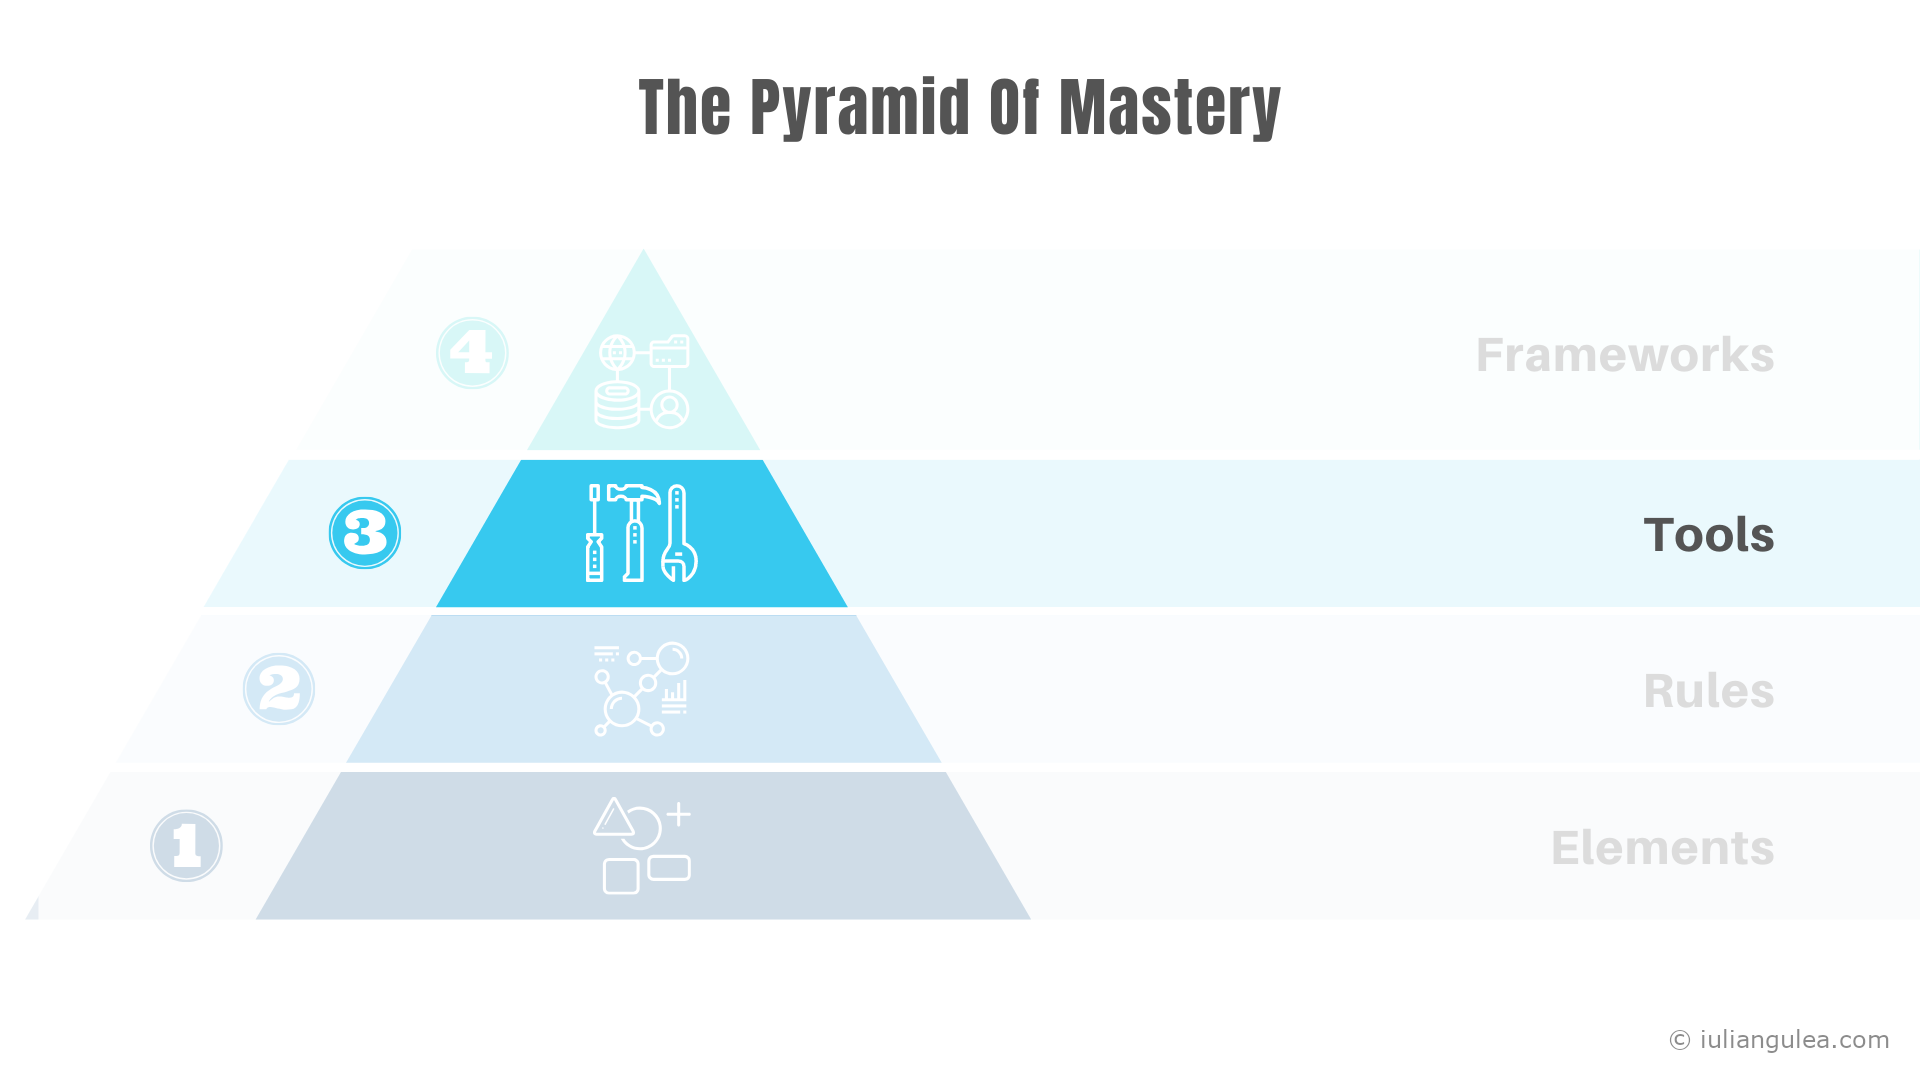 The Pyramid of Mastery - Tools